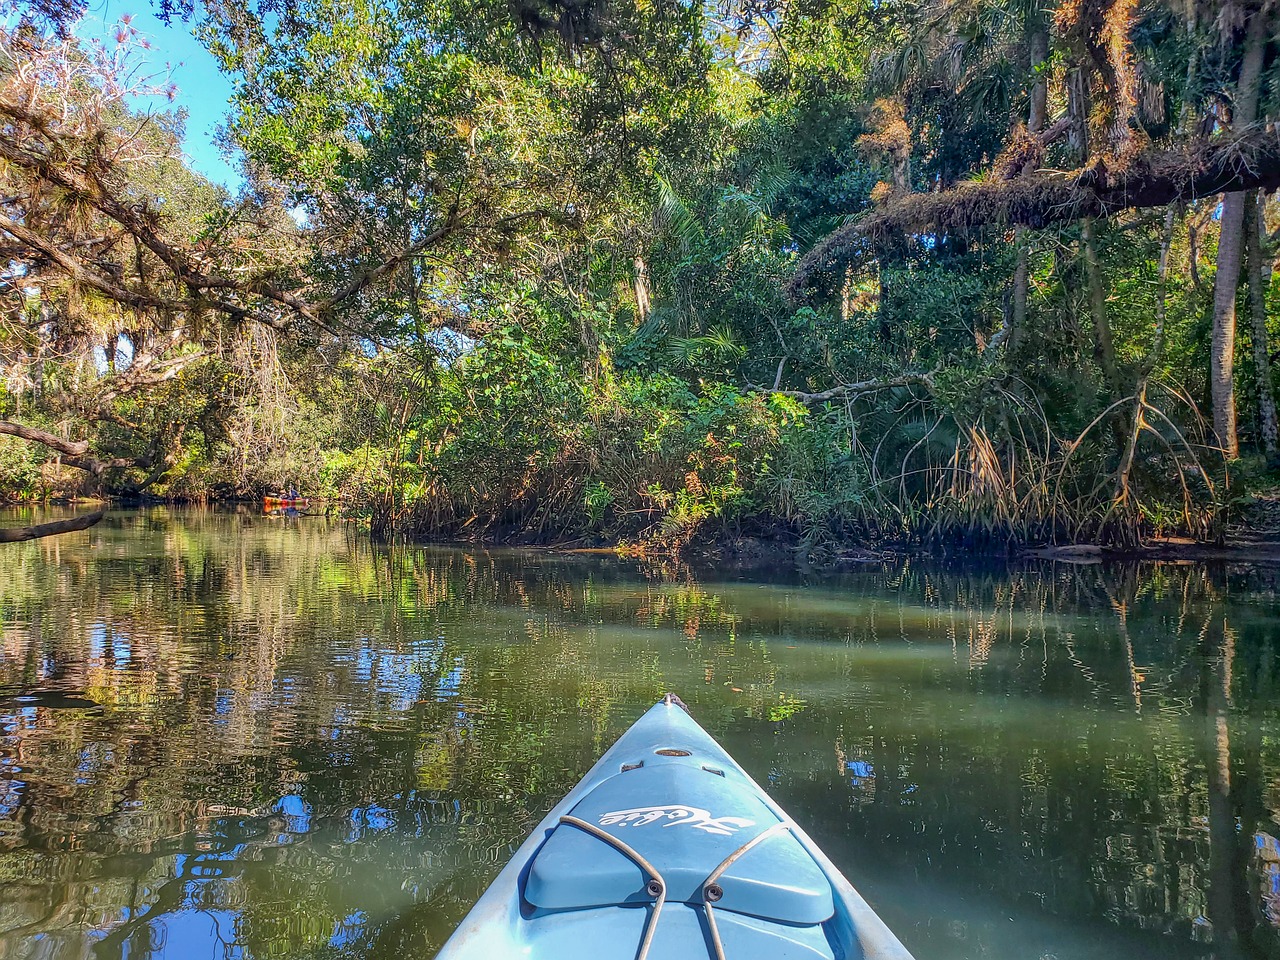 Фруктовая река. Kayak River. Черно белое фото байдарки на речке в лесу.